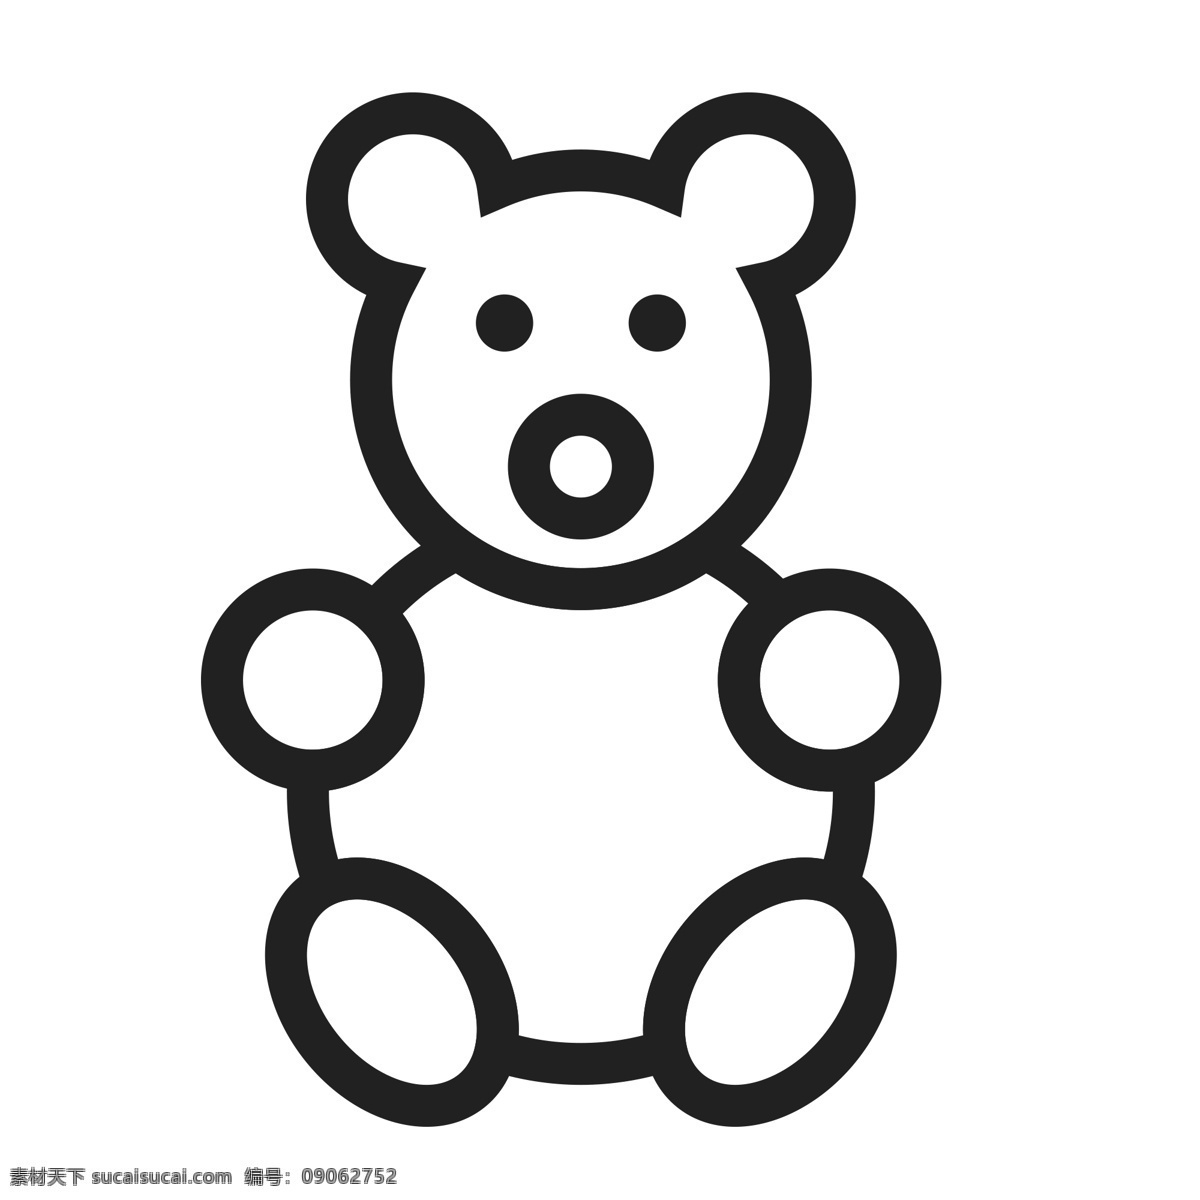 扁平化玩具熊 玩具 小熊 扁平化ui ui图标 手机图标 界面ui 网页ui h5图标